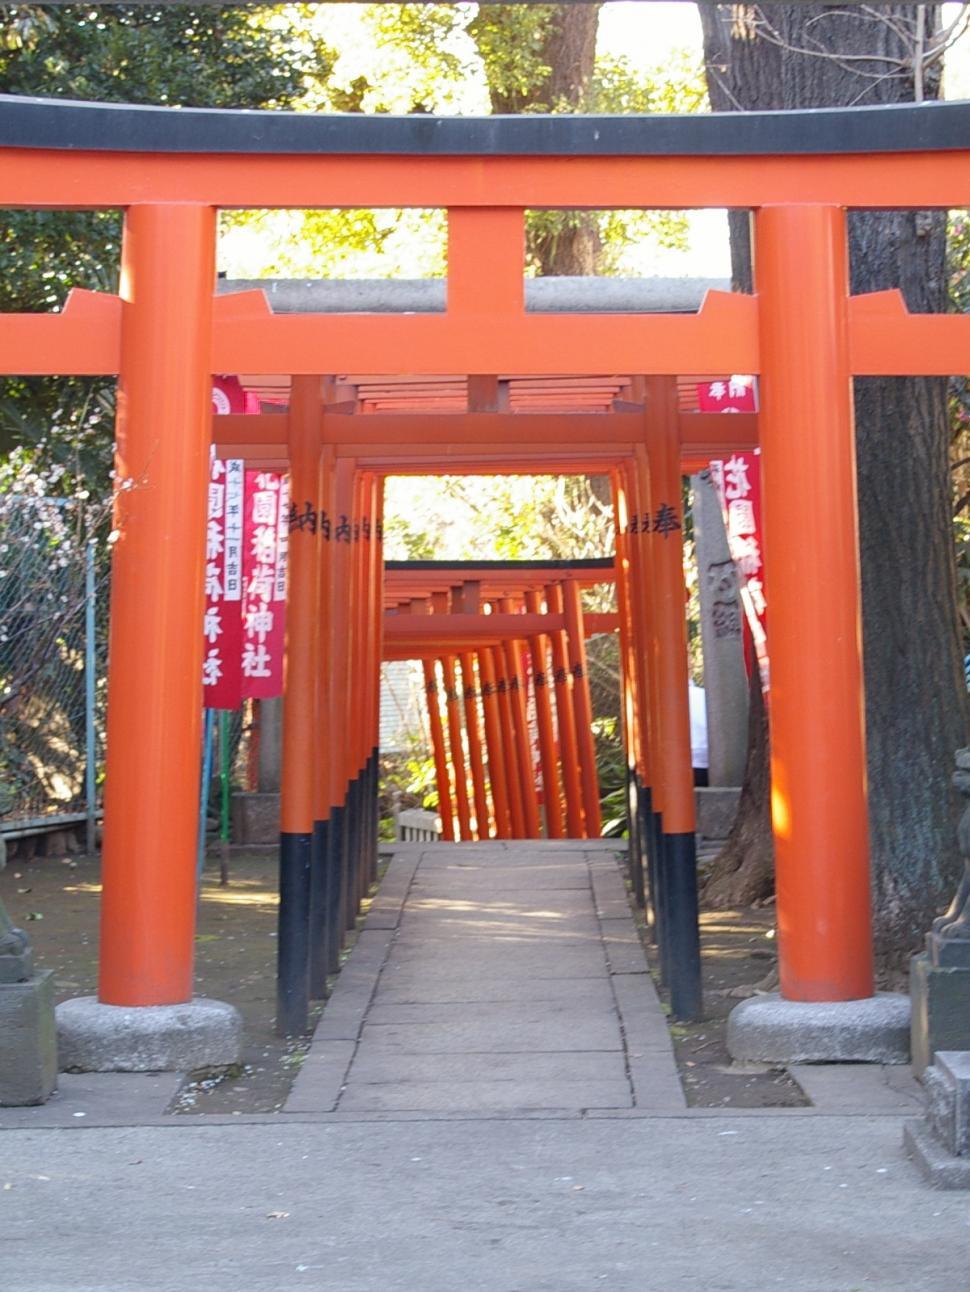 Free Image of Shrine Gates 